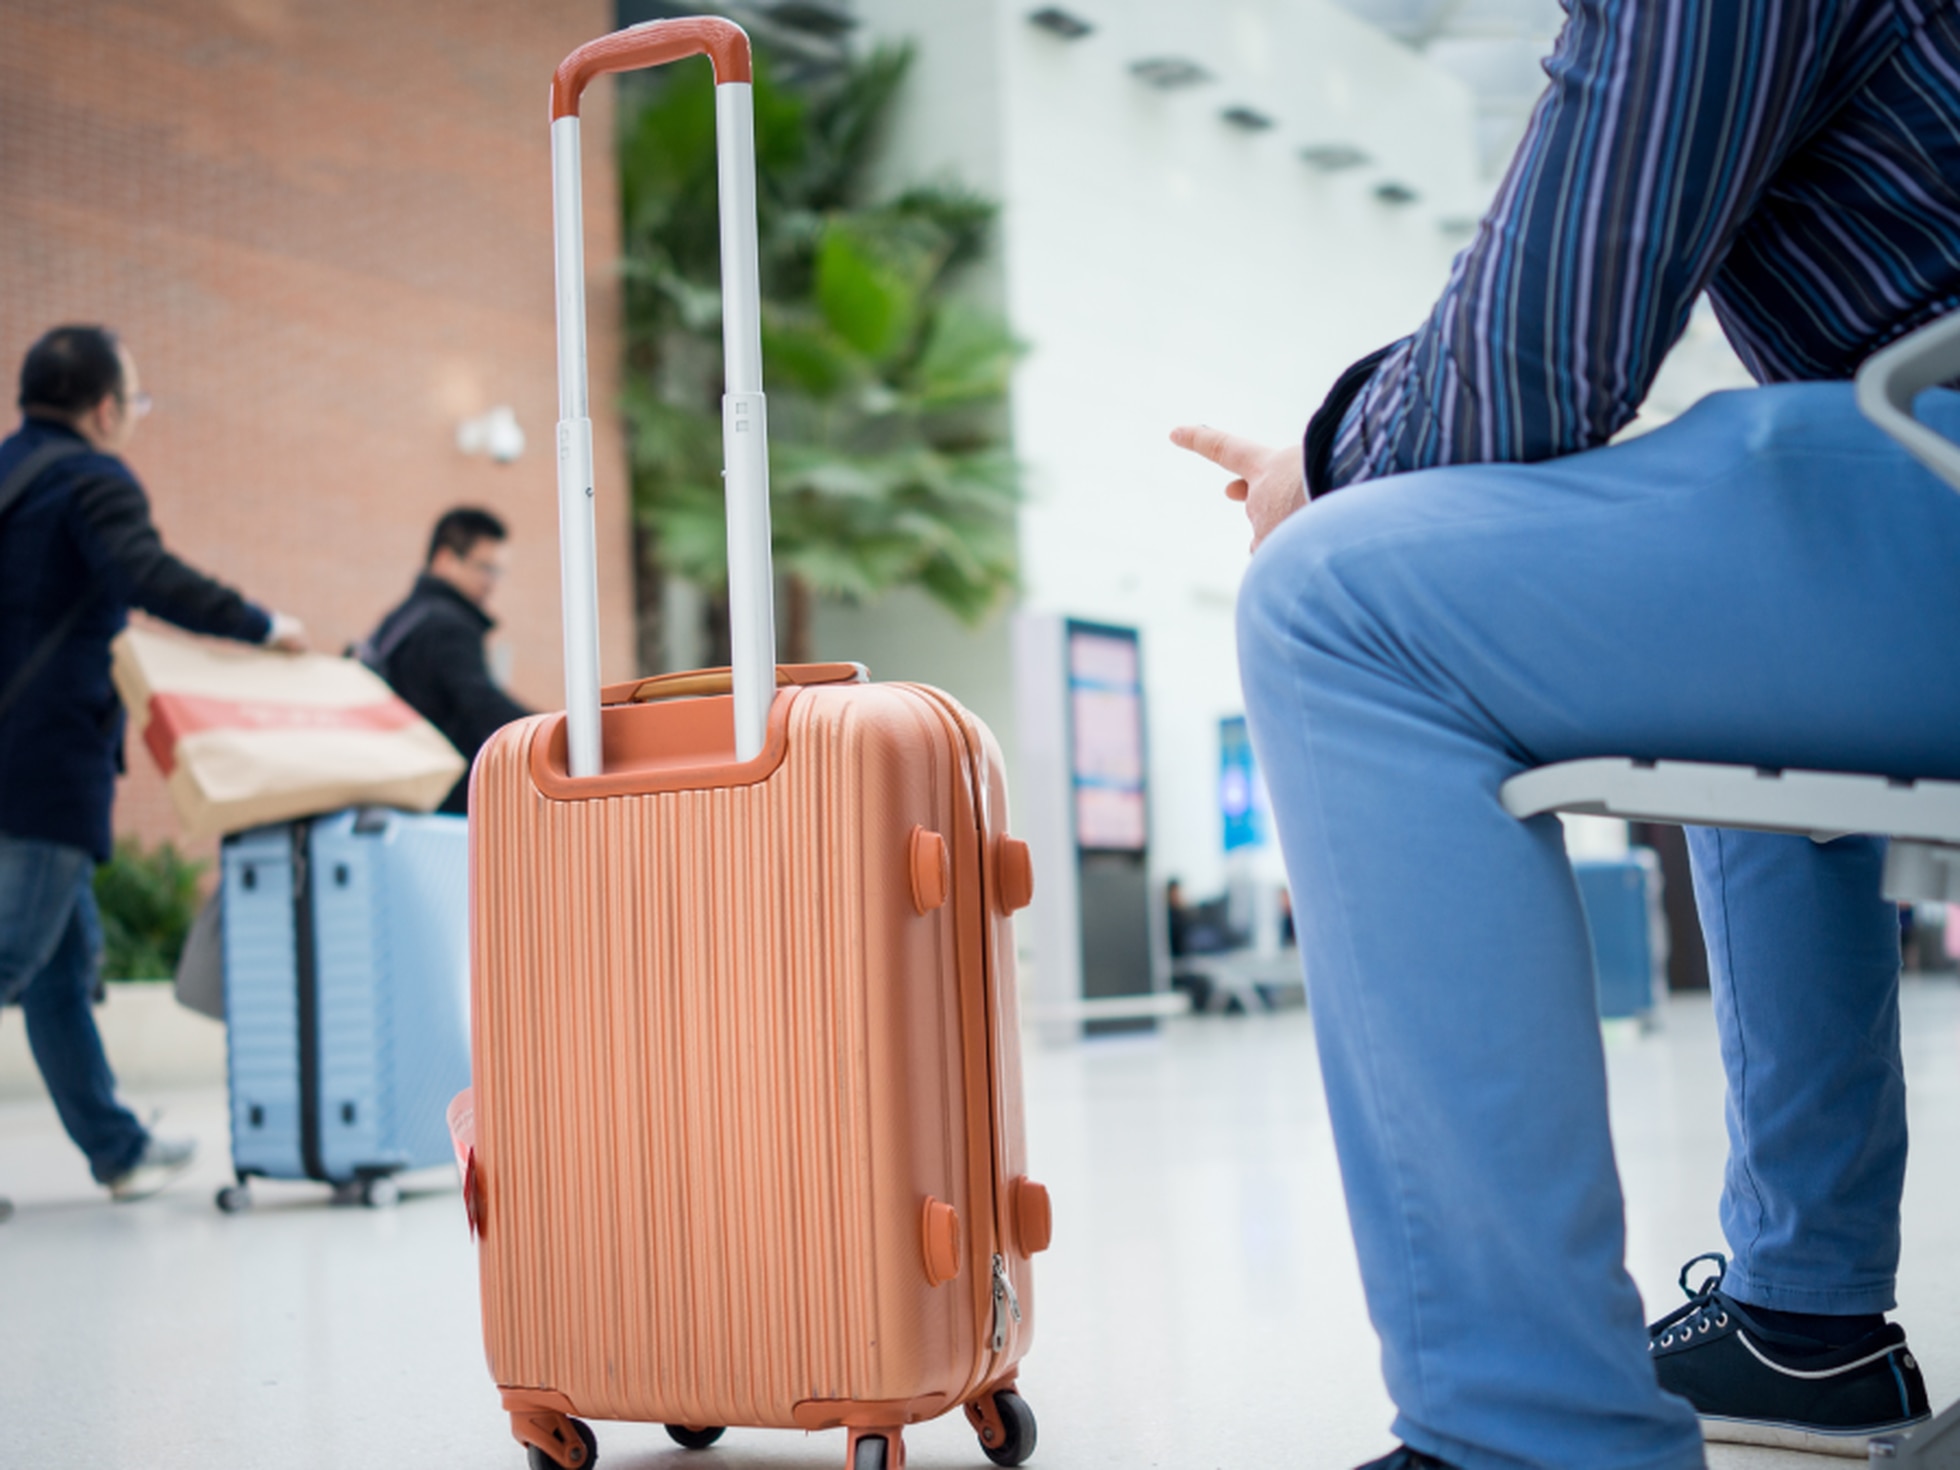 ¿Cuáles son las ventajas de las maletas rígidas sin cremallera?